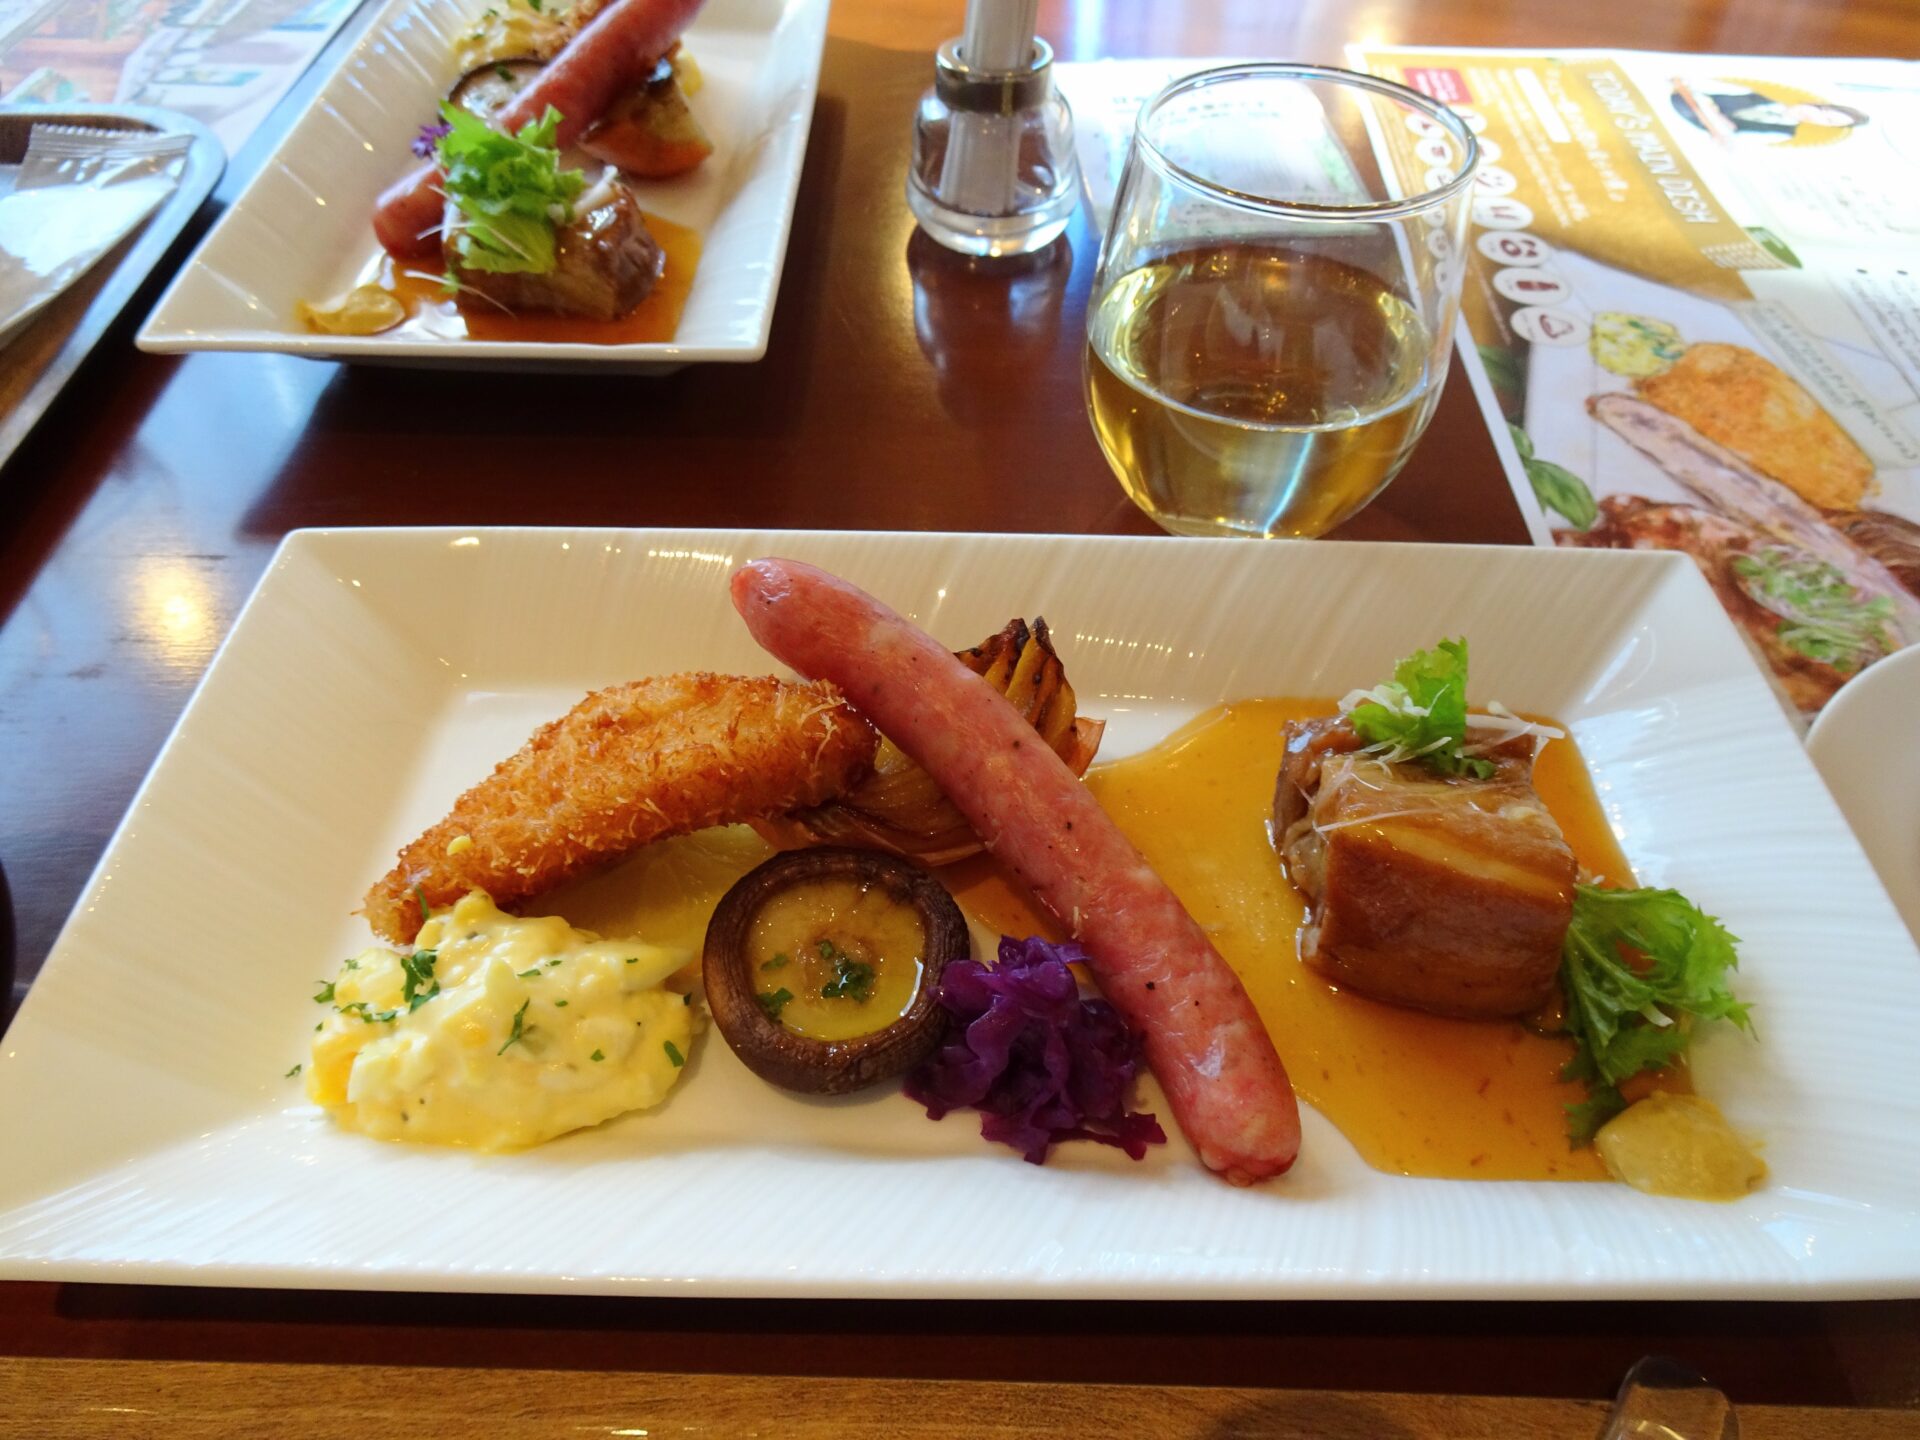 プレミアホテル 中島公園 札幌、５階ビストロ「ラ・プロヴァンス」、朝食ブッフェ、日替わりメインプレート